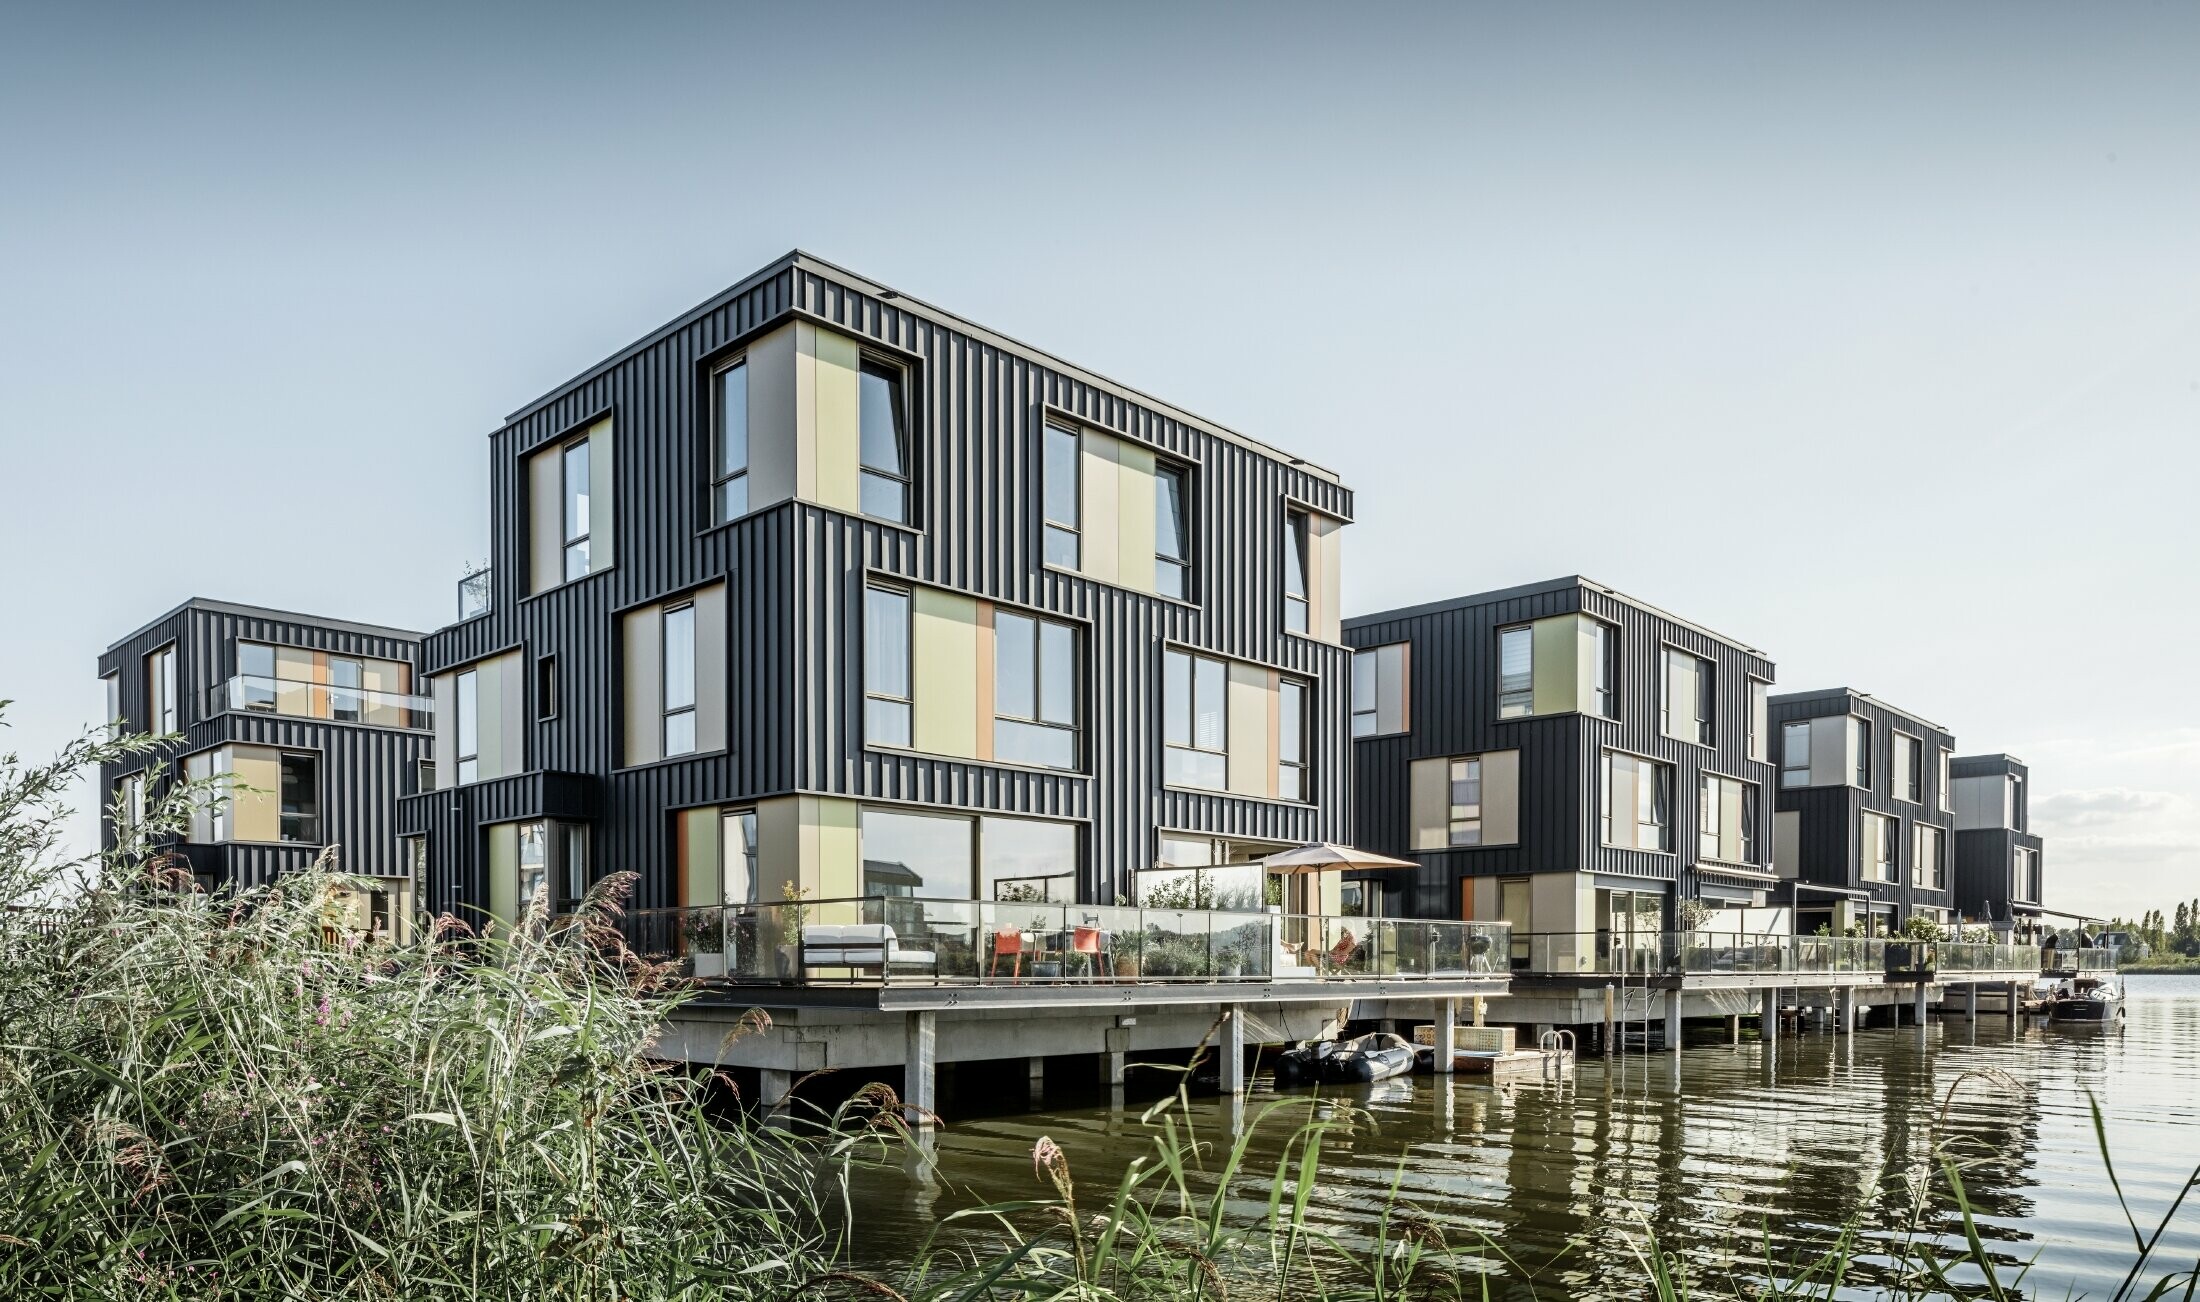 Nový rezidenční projekt s rodinnými dvojdomky u jezera v Amsterdamu. Domy byly opláštěny fasádou PREFALZ od PREFA v barvě P.10 antracitové